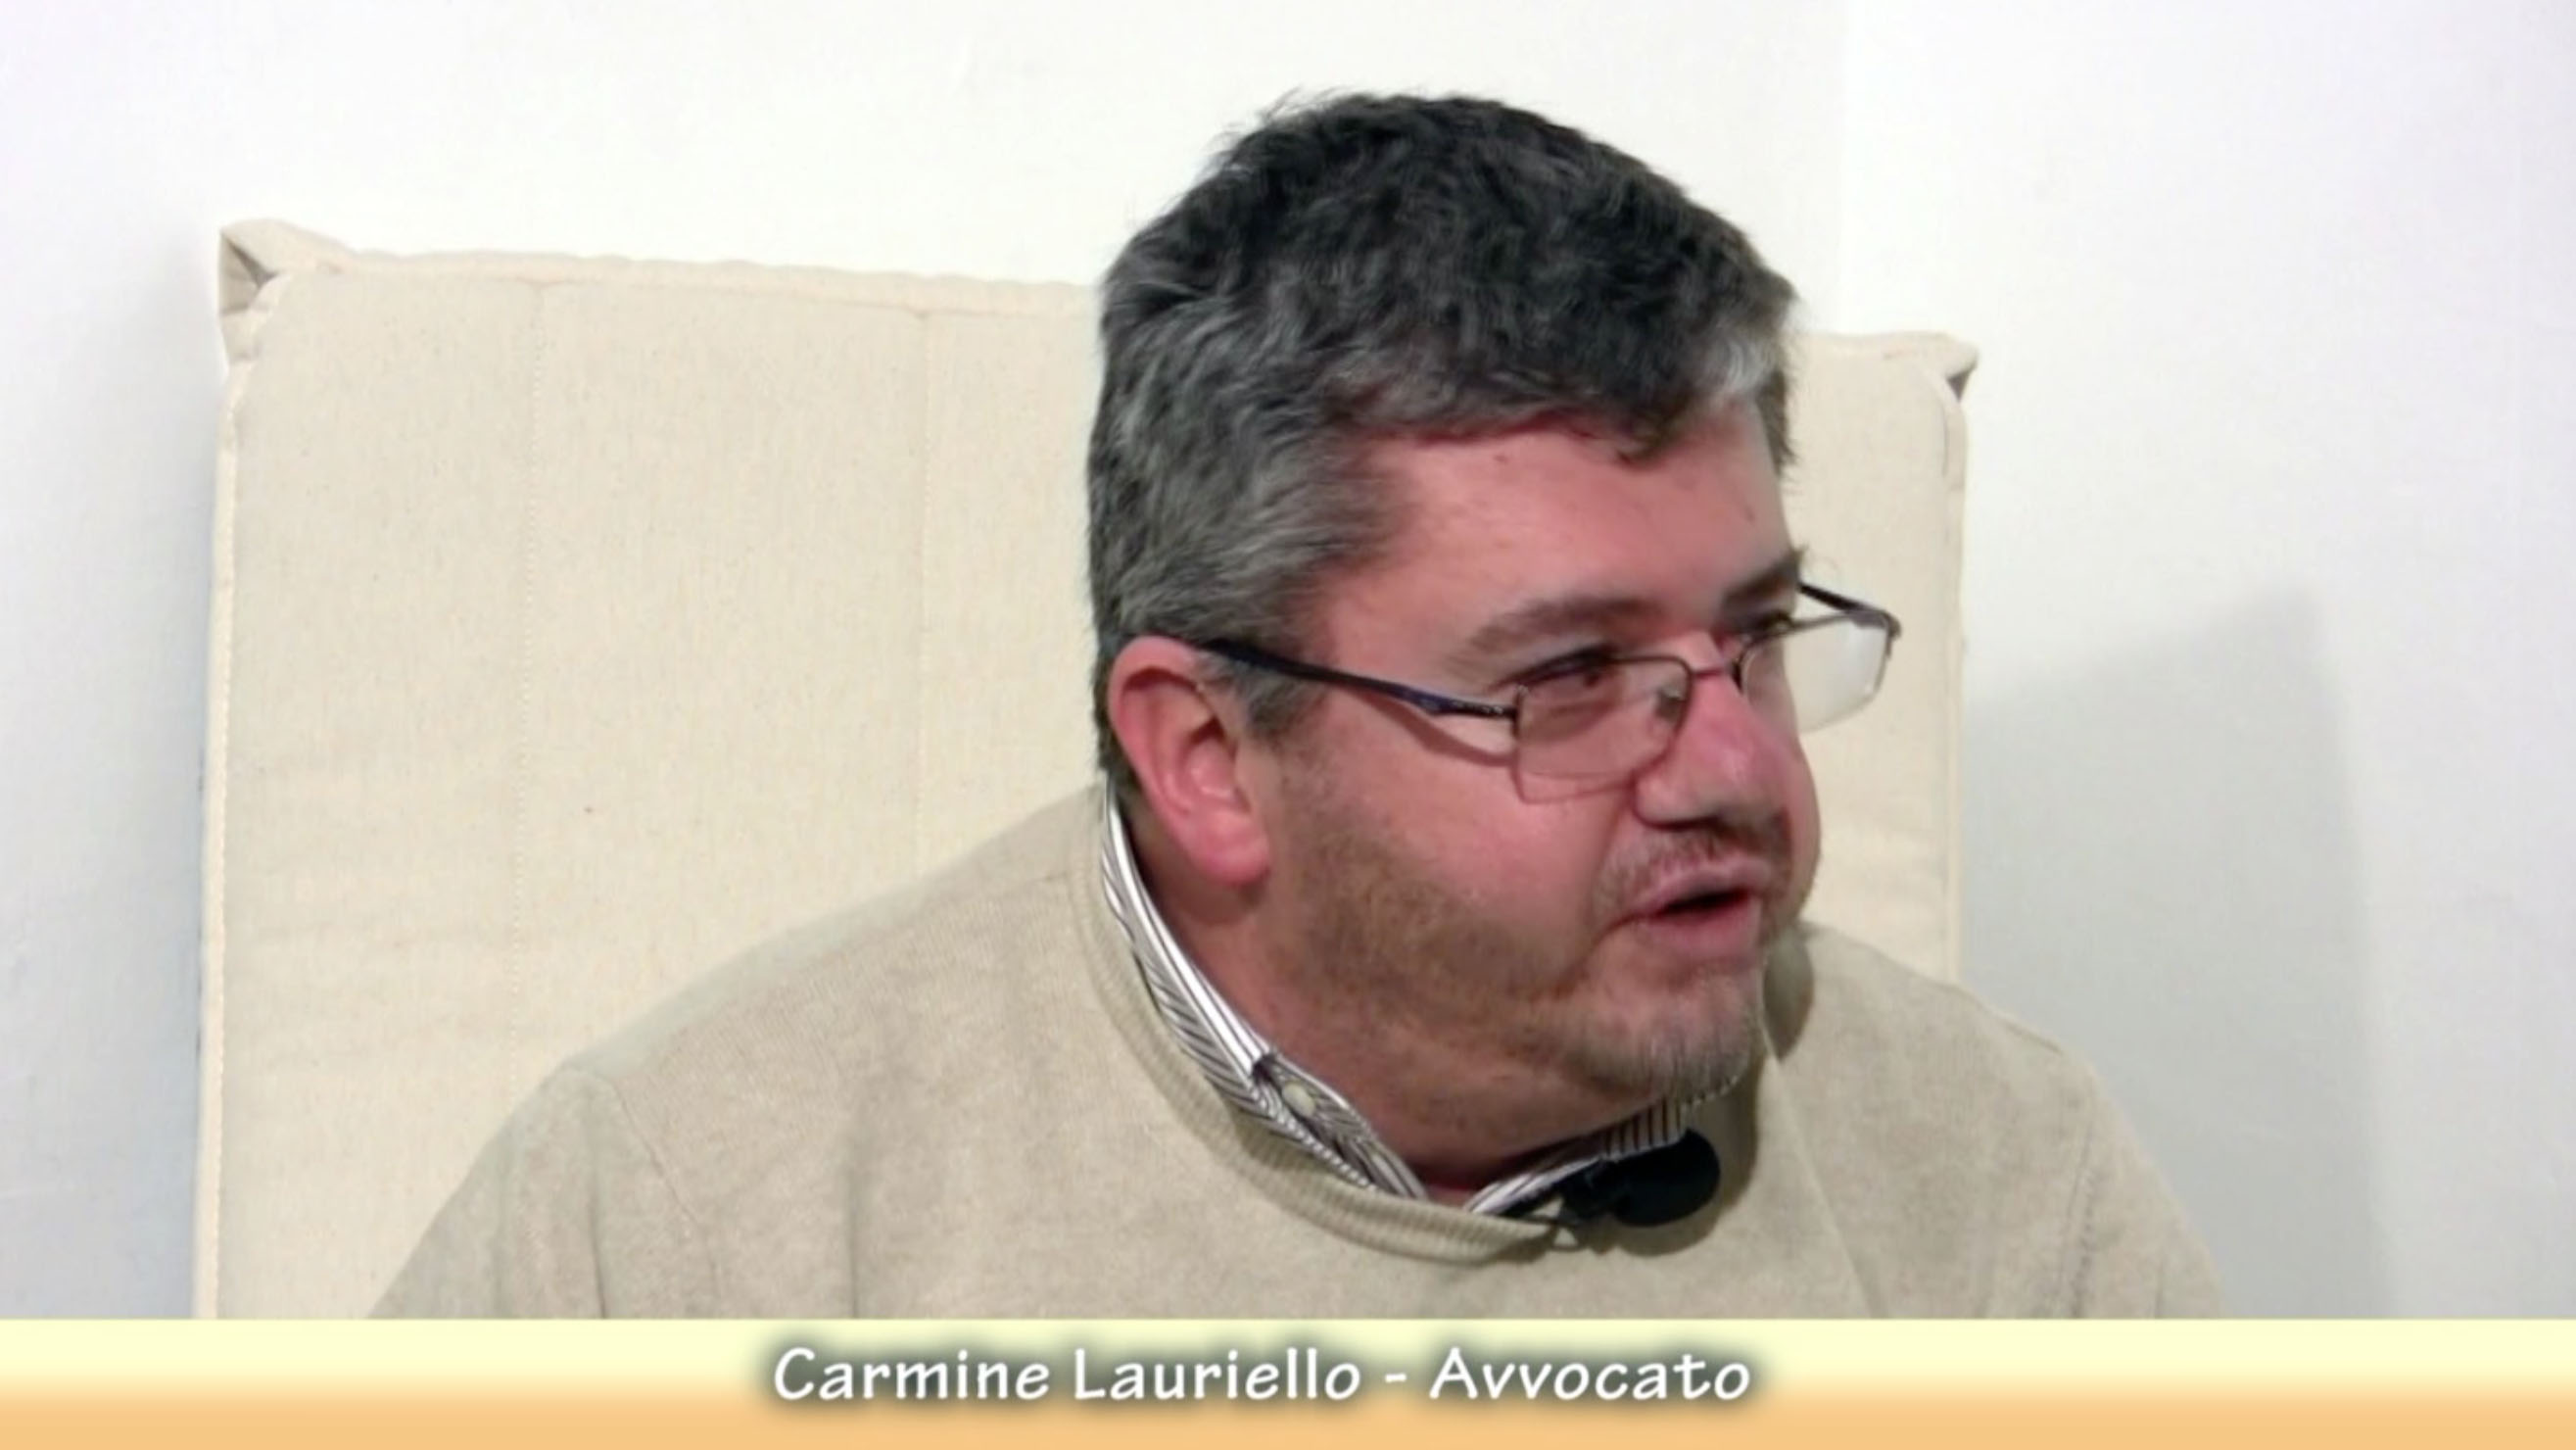 Carmine Lauriello - Avvocato e Collaboratore SED TV